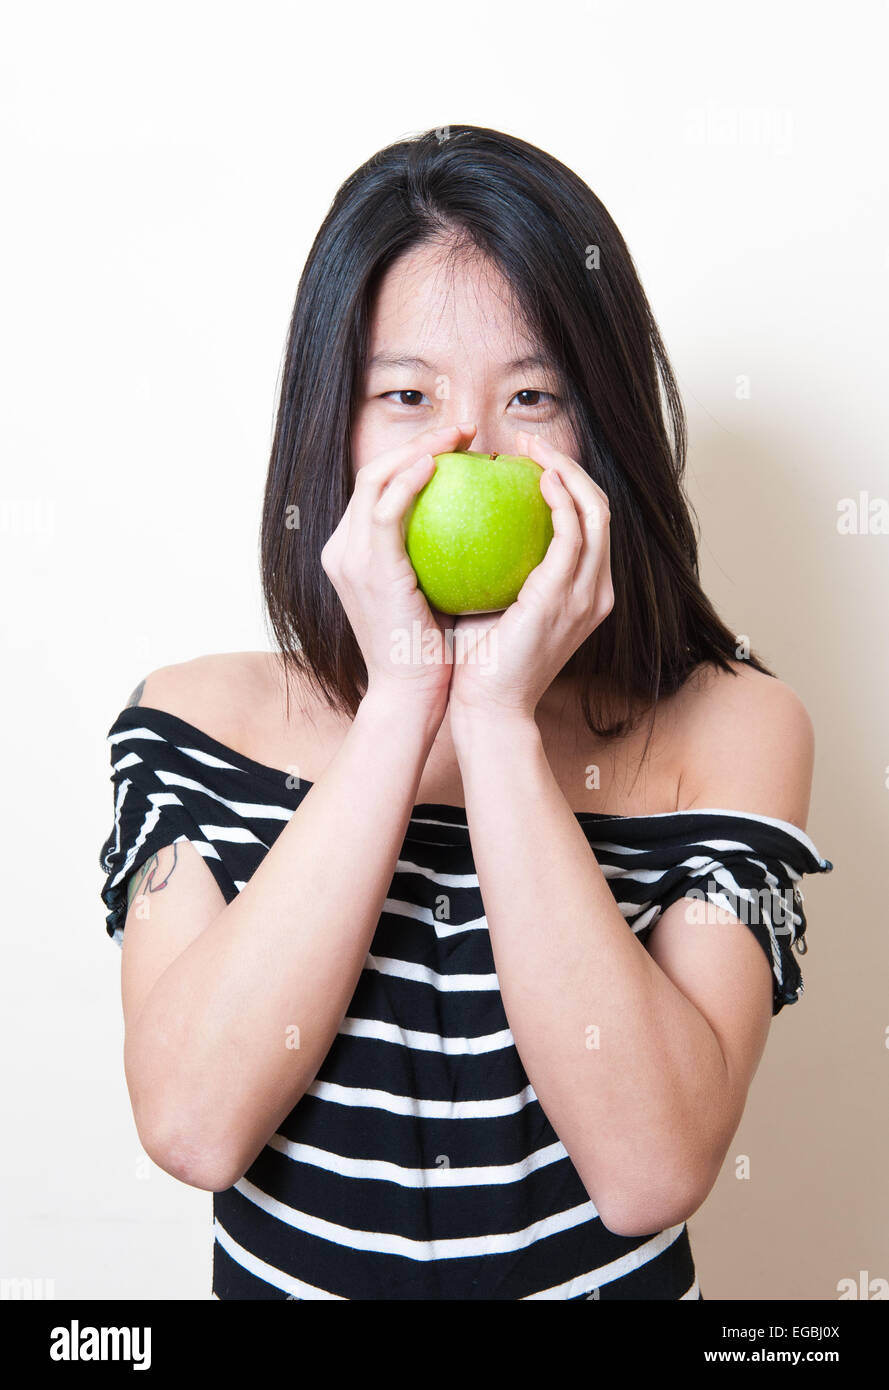 Belle jeune femme asiatique portrait smiling with green apple par la bouche sur fond blanc Banque D'Images